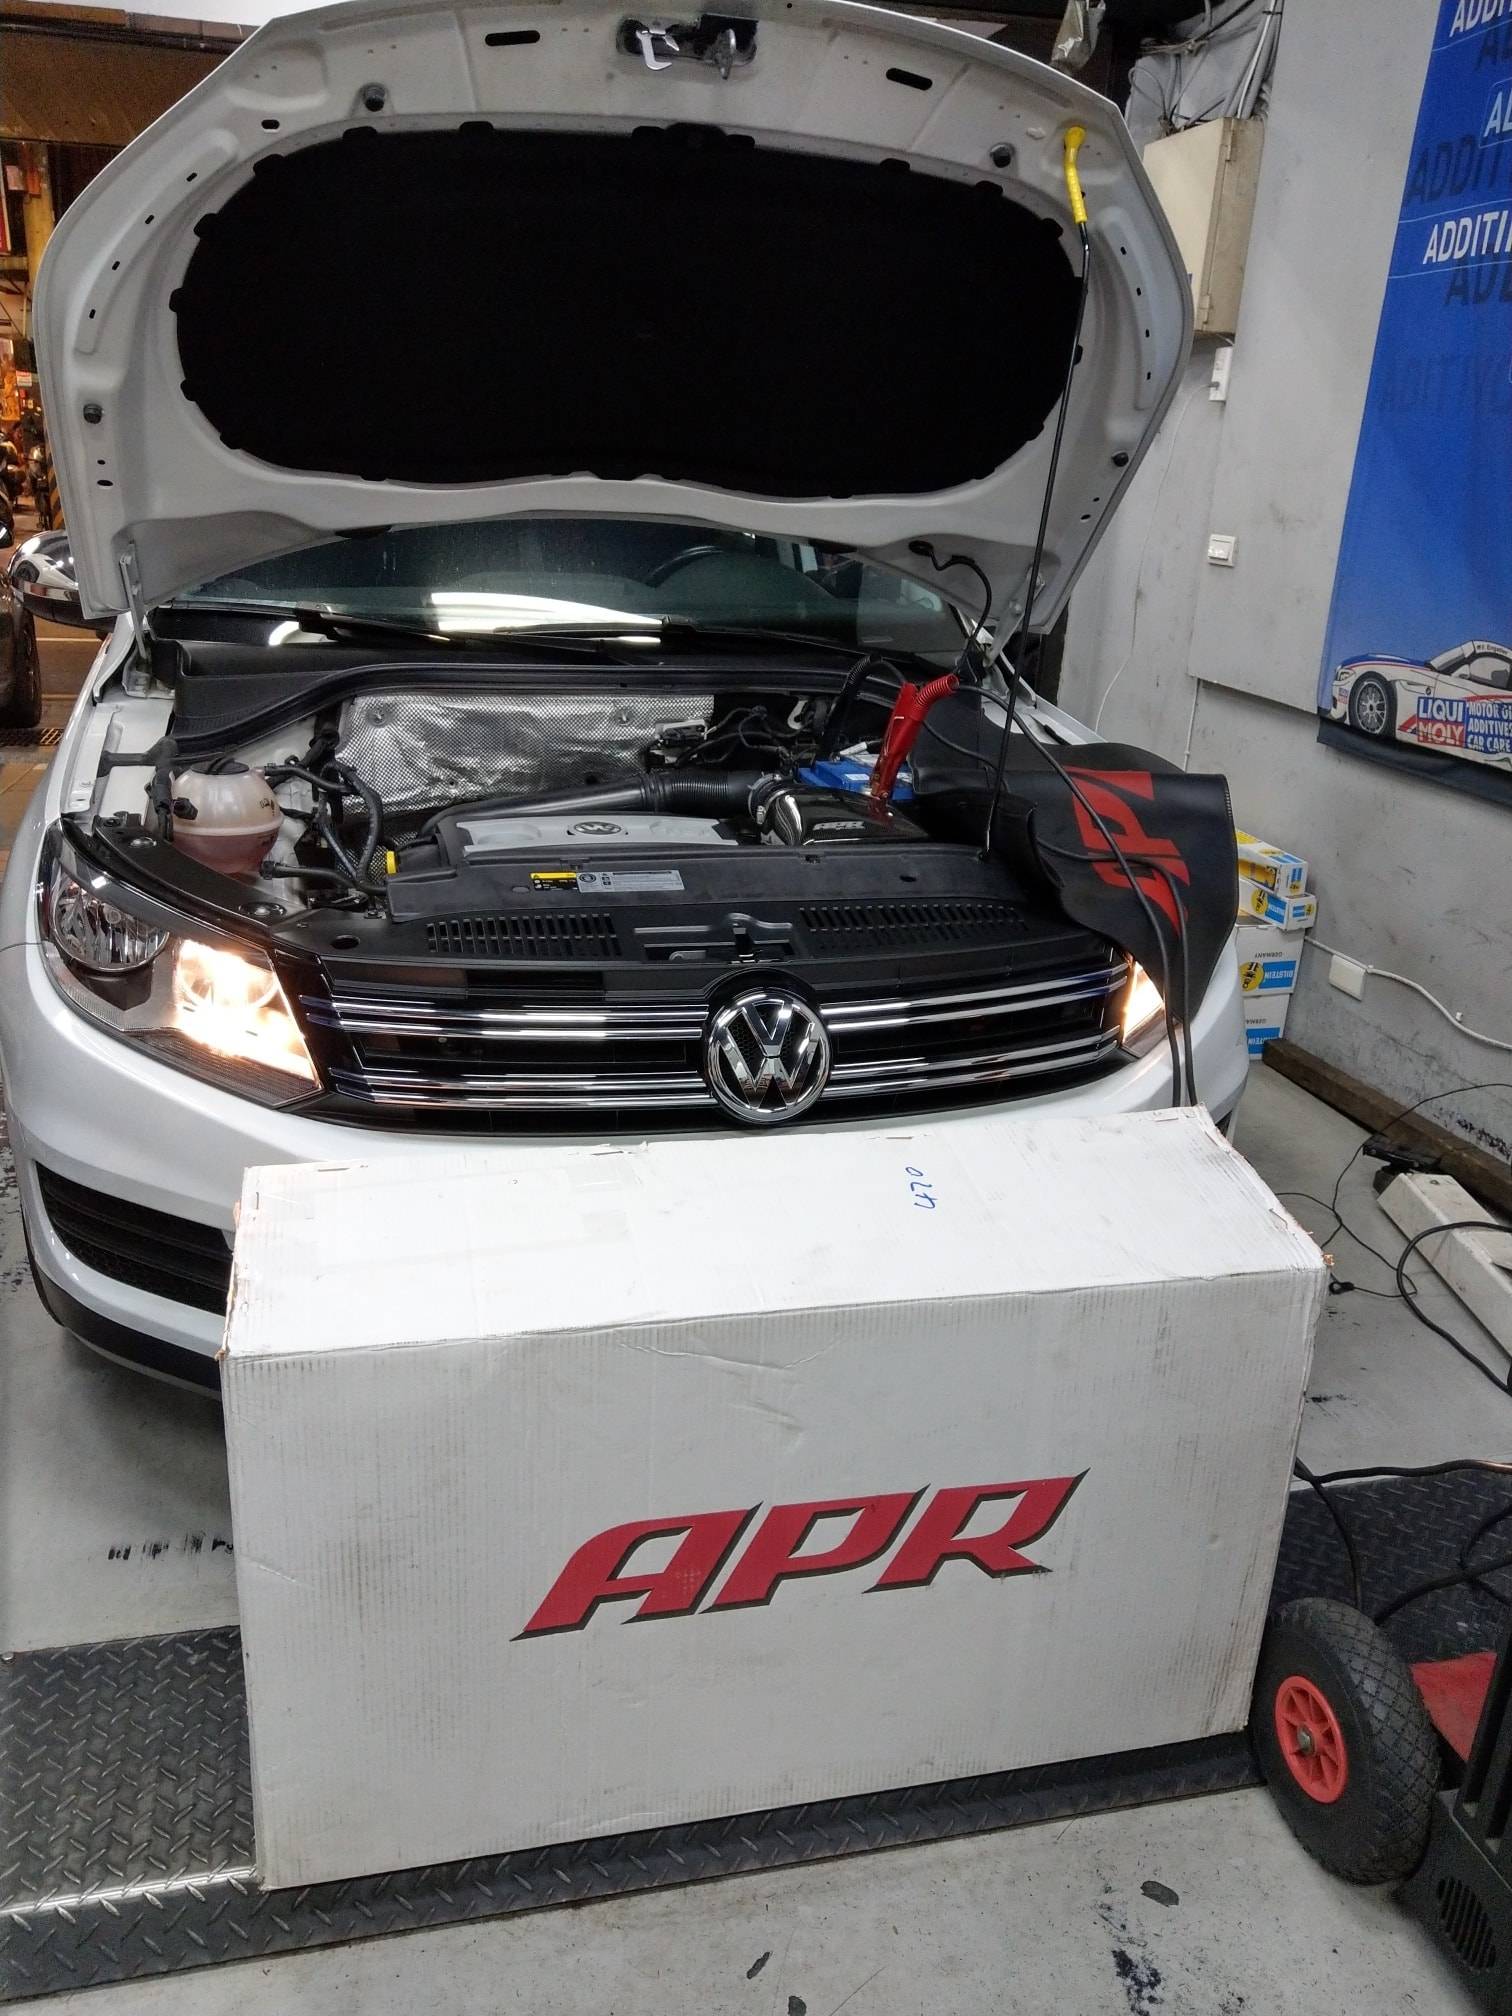 【全德汽車】福斯/VW TIGUAN 2.0 TSI/APR Intercooler#APR中冷器系統#降低了增壓空氣溫度#VAG改裝推薦#增加馬力和扭矩#新北市板橋區VW推薦保修維修專業廠